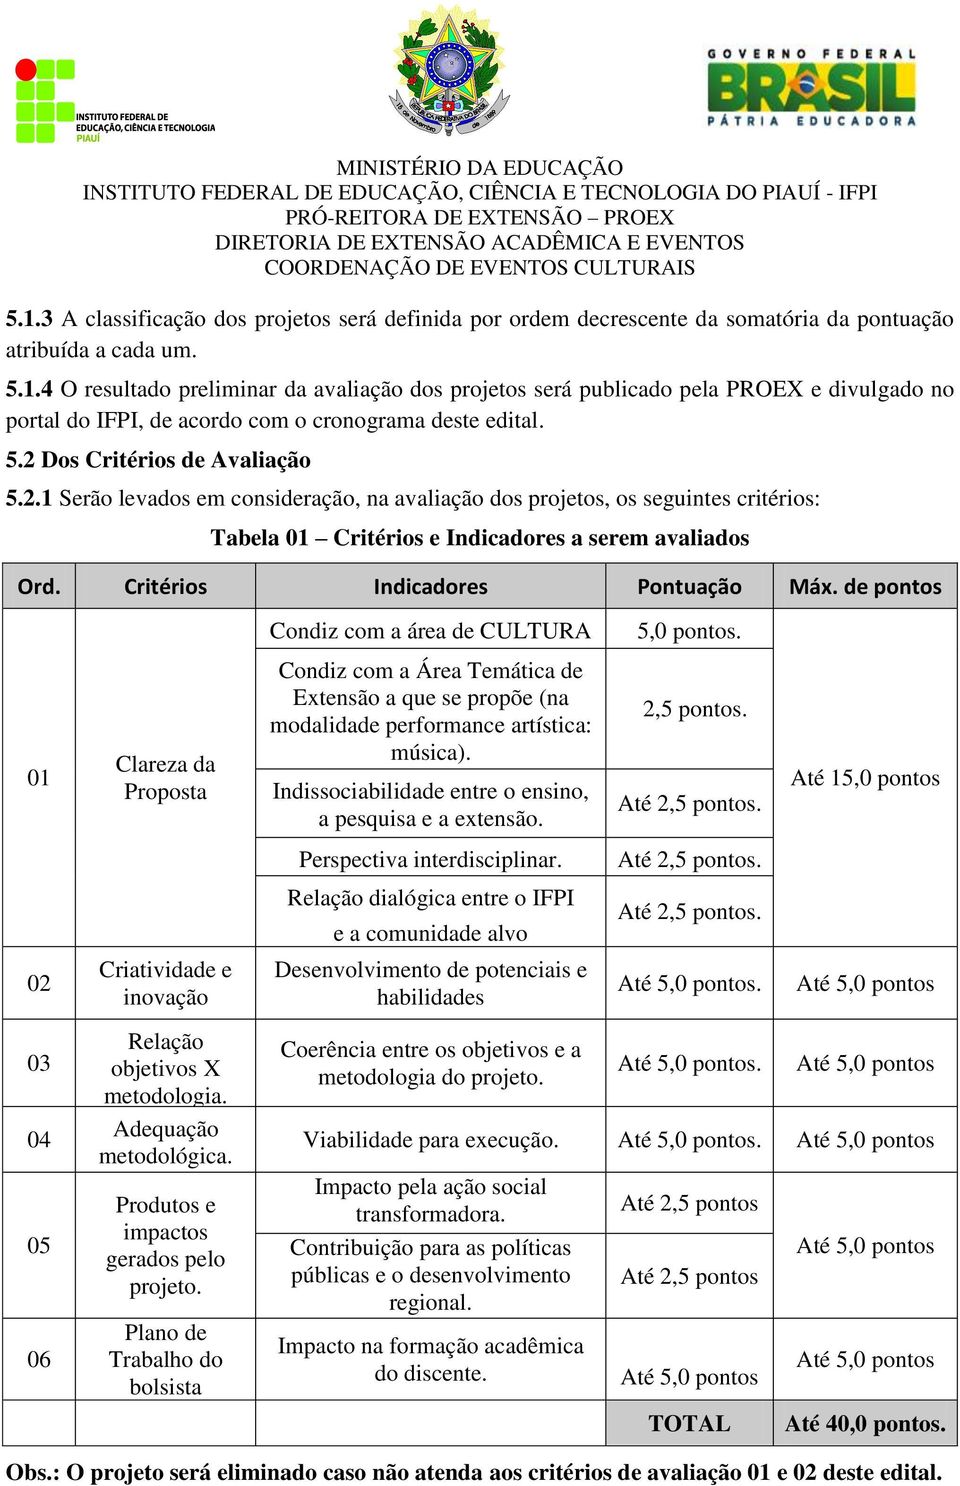 Critérios Indicadores Pontuação Máx. de pontos Condiz com a área de CULTURA 5,0 pontos.